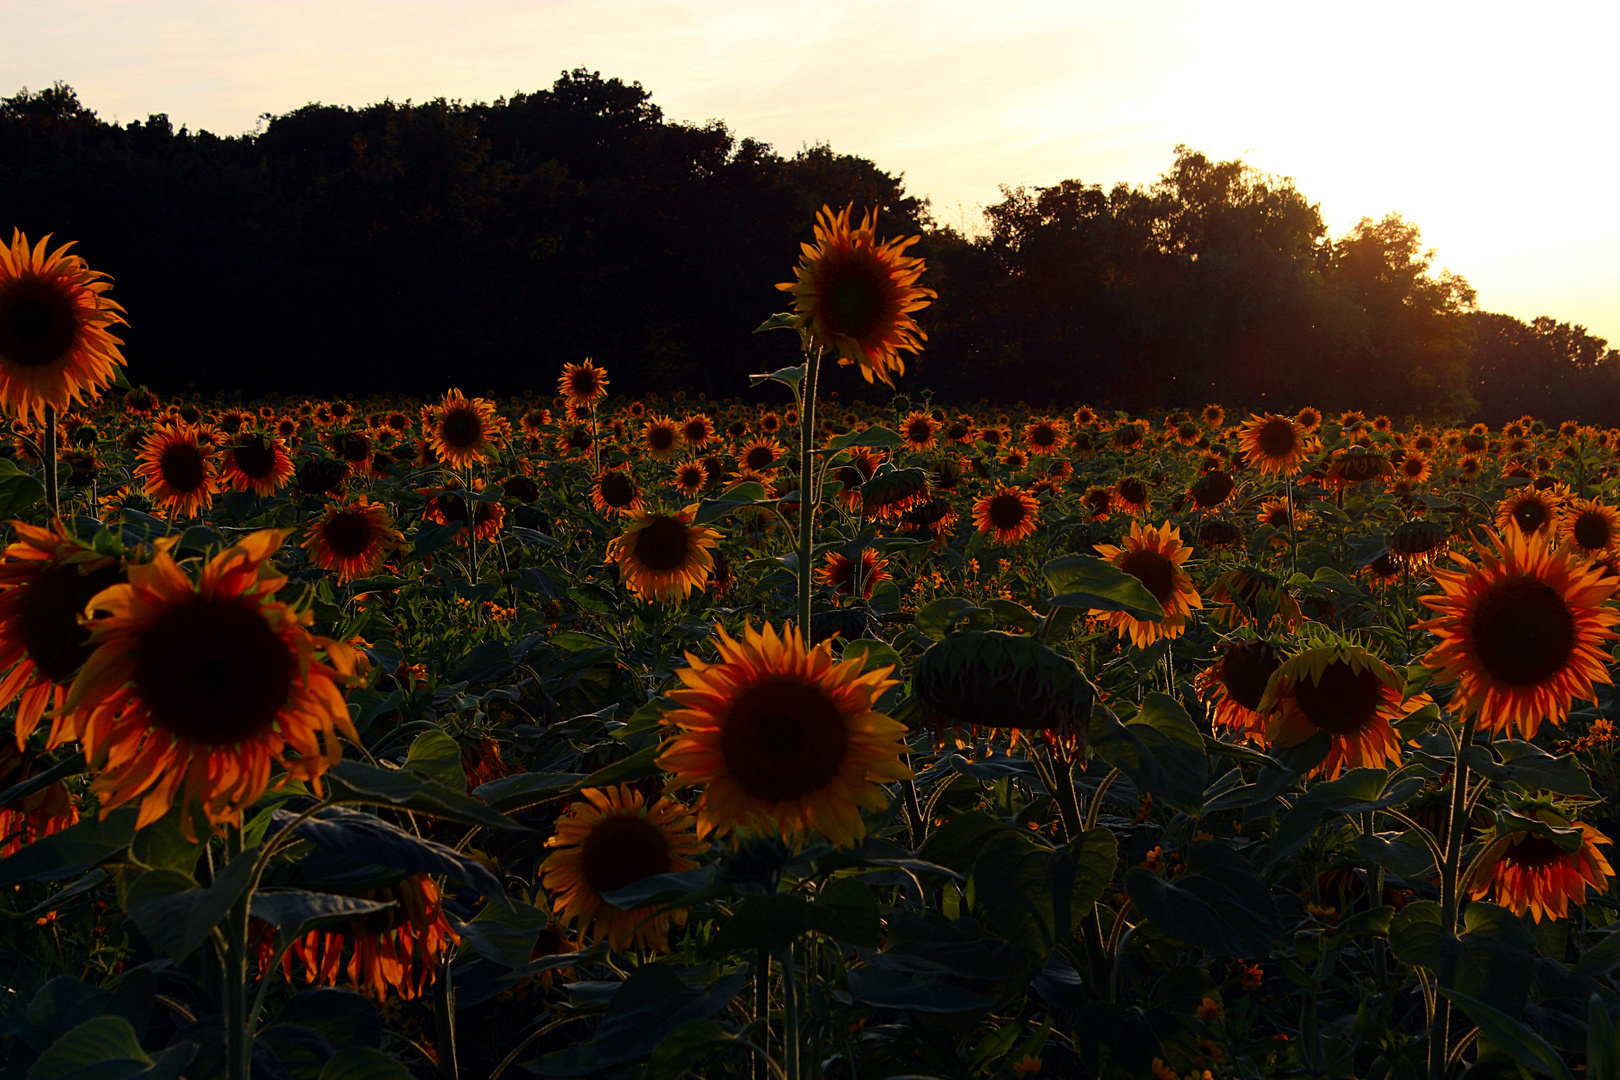  sunflower field forever